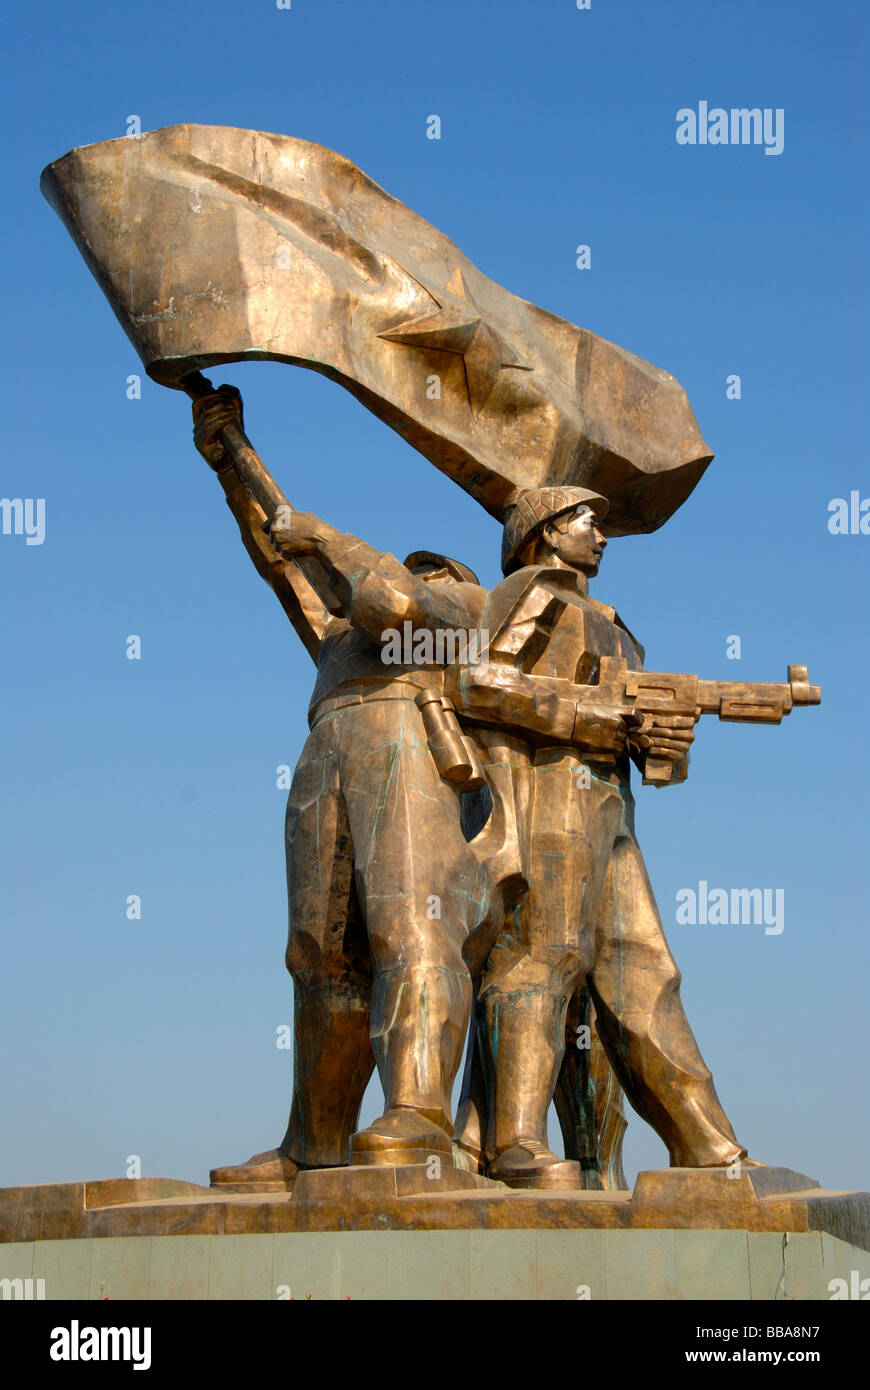 Première Guerre d'Indochine 1954, grand monument en bronze de la victoire de l'Viet Minh, Dien Bien Phu, Vietnam, Asie du Sud, Asie Banque D'Images